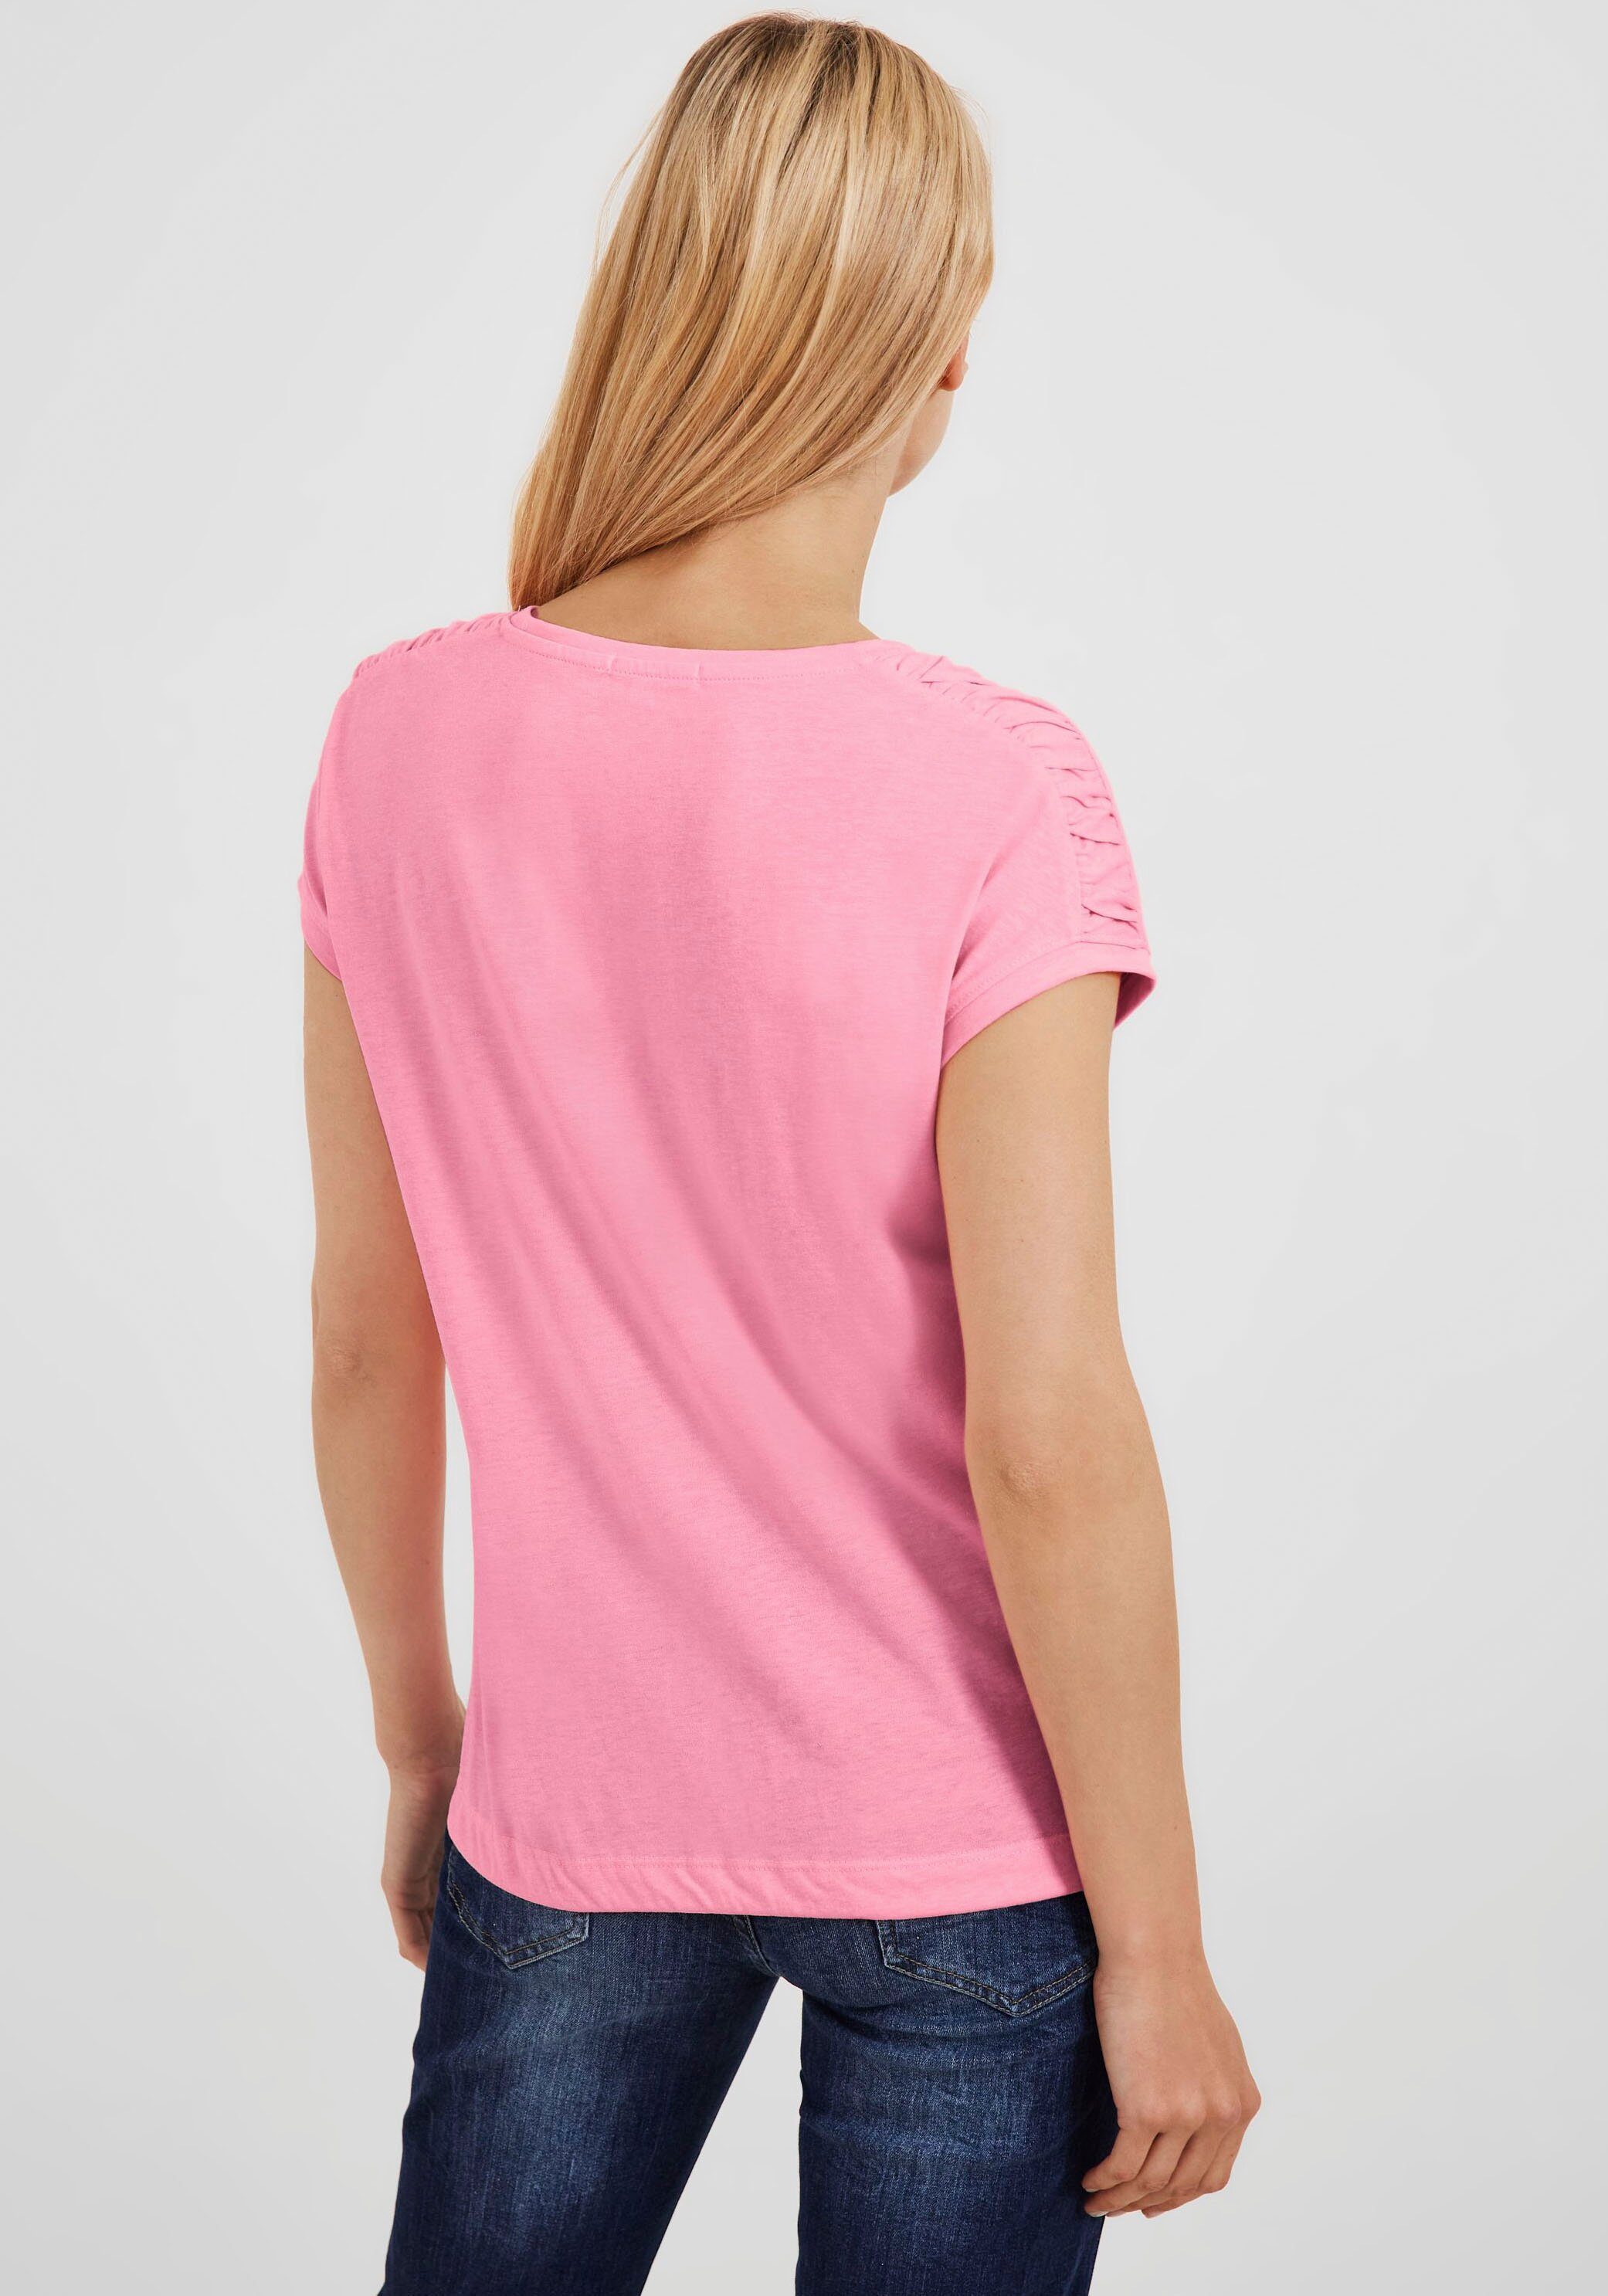 mit soft NOS Cecil Gathering pink T-Shirt Fledermausärmeln S Shoulder